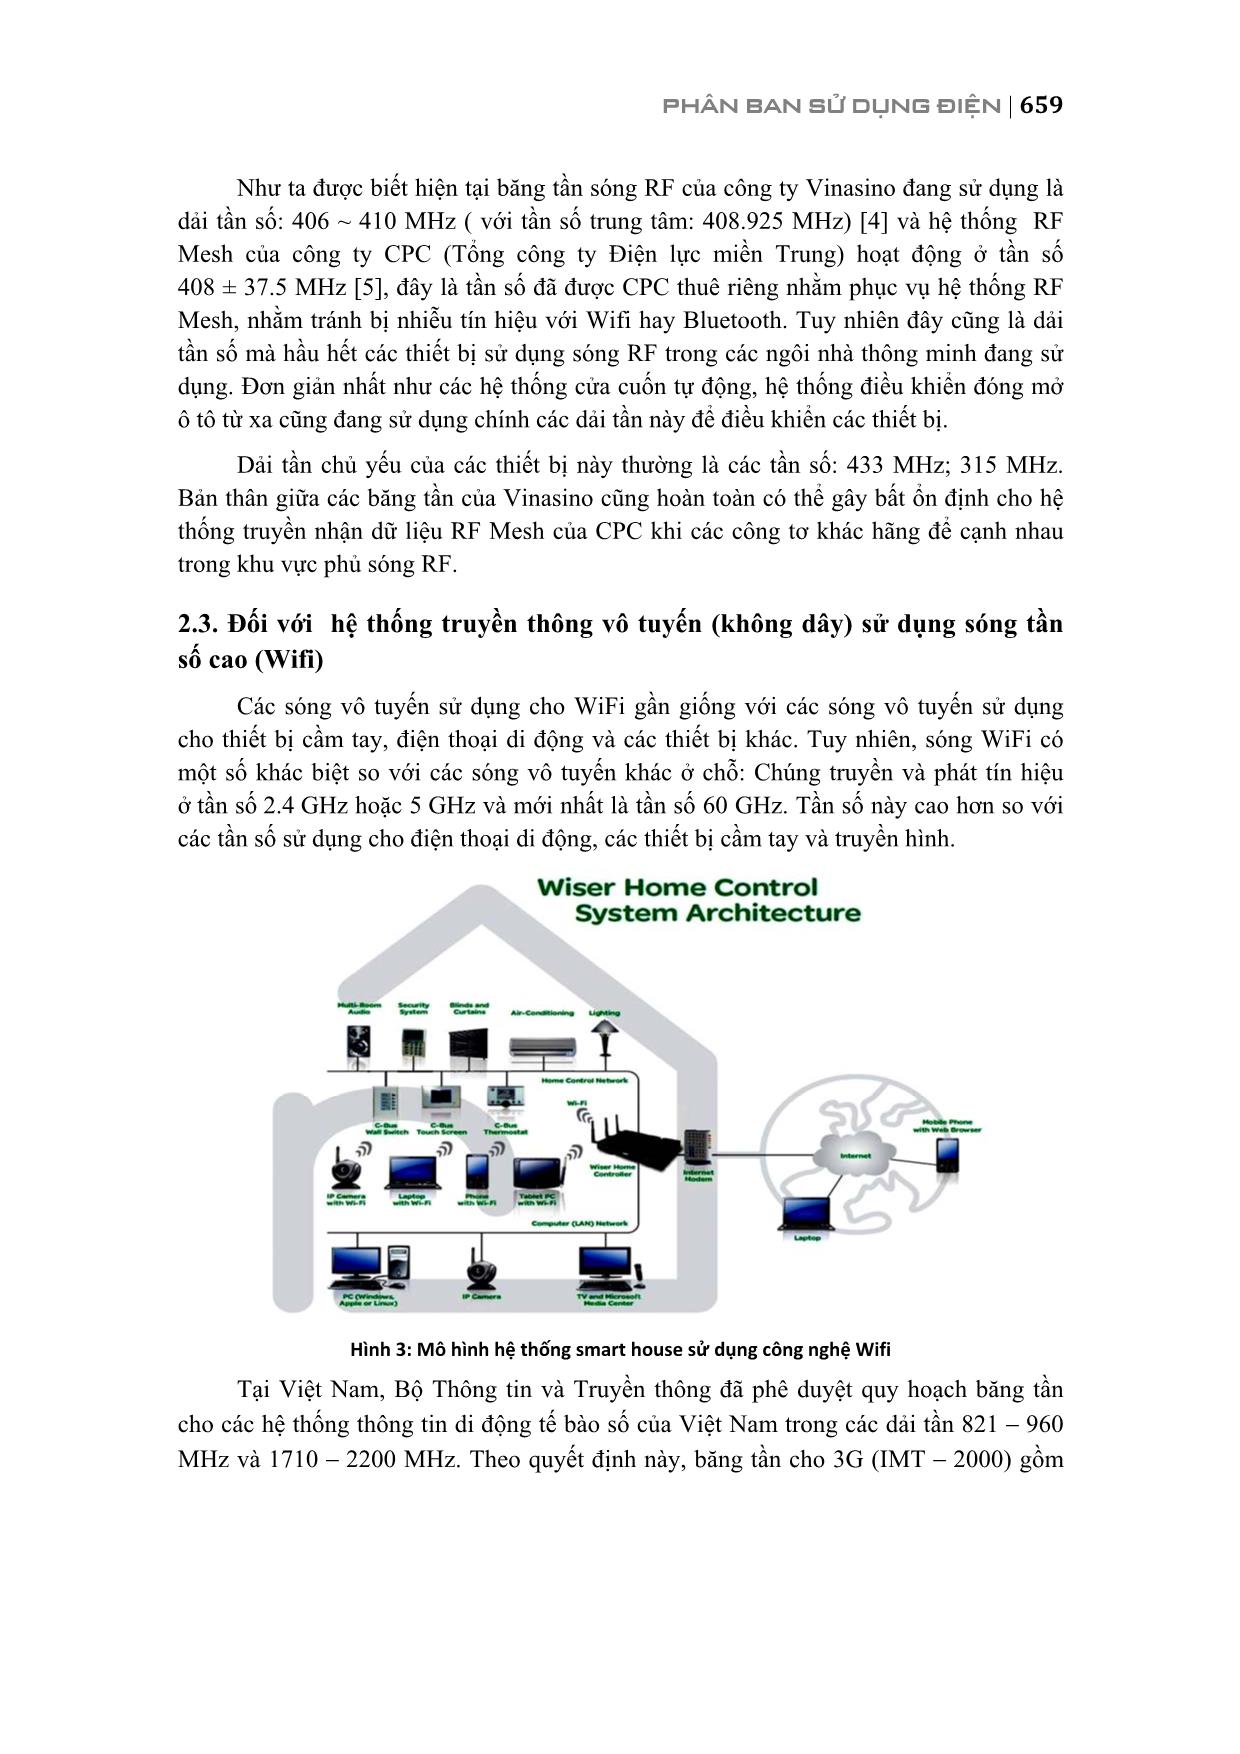 Truyền thông trong smart house và tác động với hệ thống điện Việt Nam trang 5